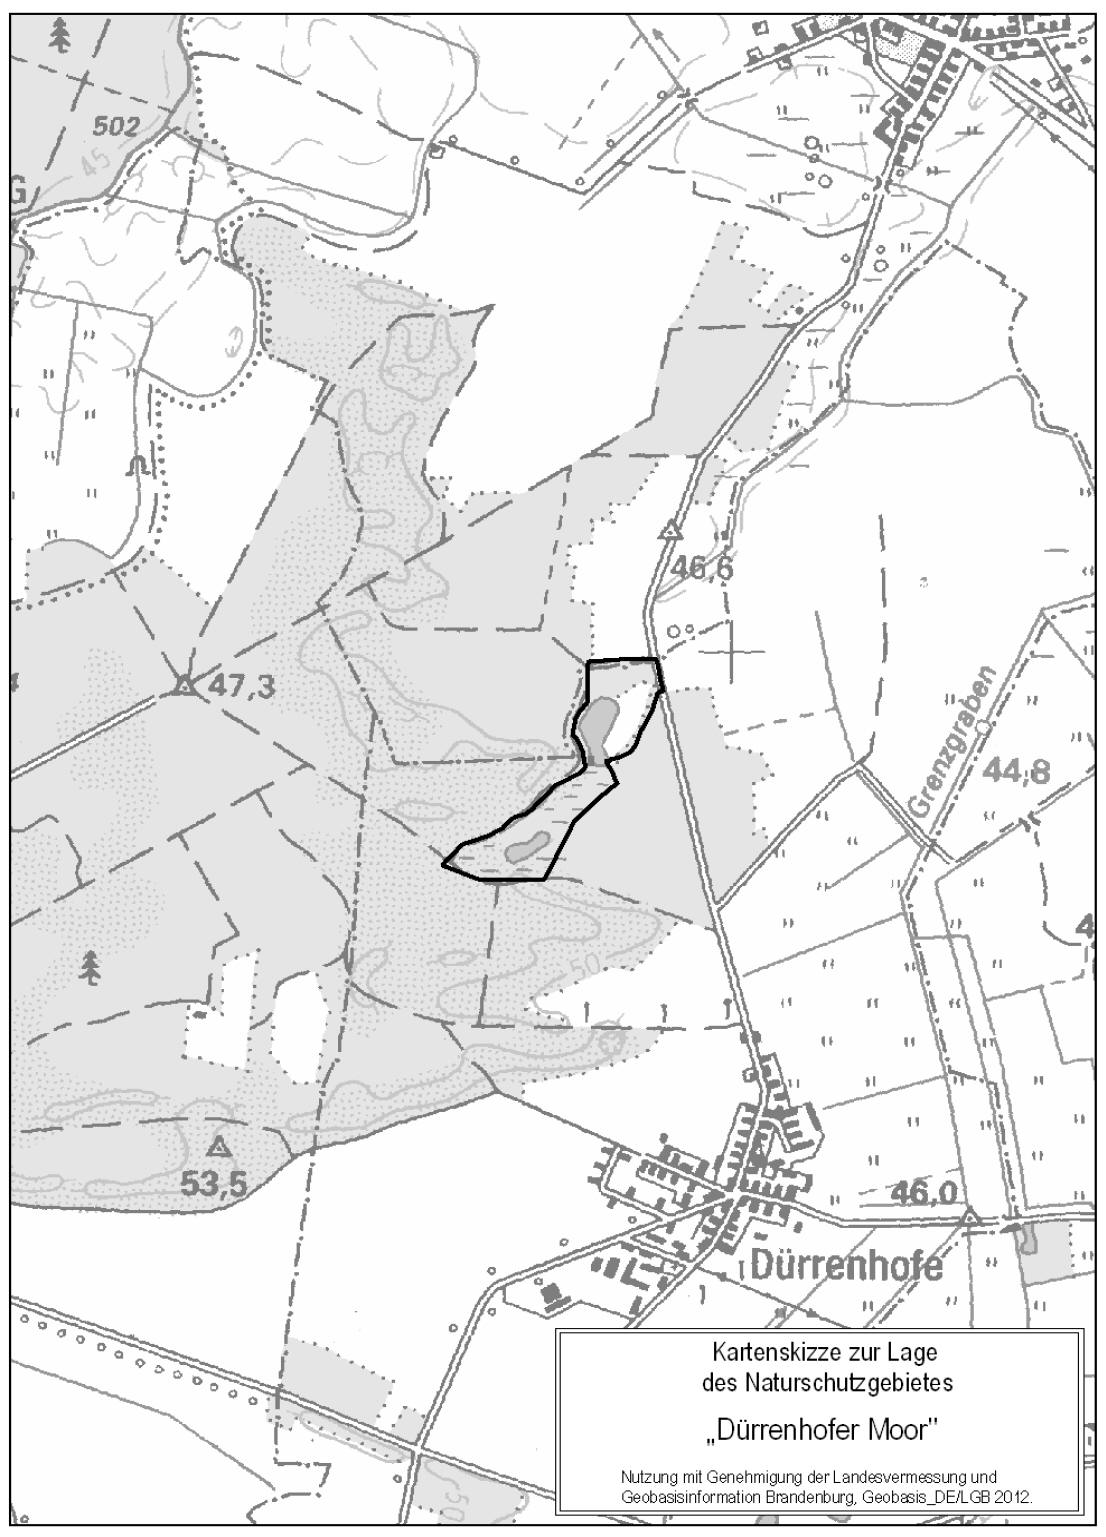 Das Naturschutzgebiet Dürrenhofer Moor liegt im Landkreis Dahme-Spreewald im Bereich der Gemeinde Märkische Heide und umfasst die Flurstücke 73, 75/1 teilweise, 76, 77 und 118 teilweise der Flur 1 in der Gemarkung Dürrenhofe. 